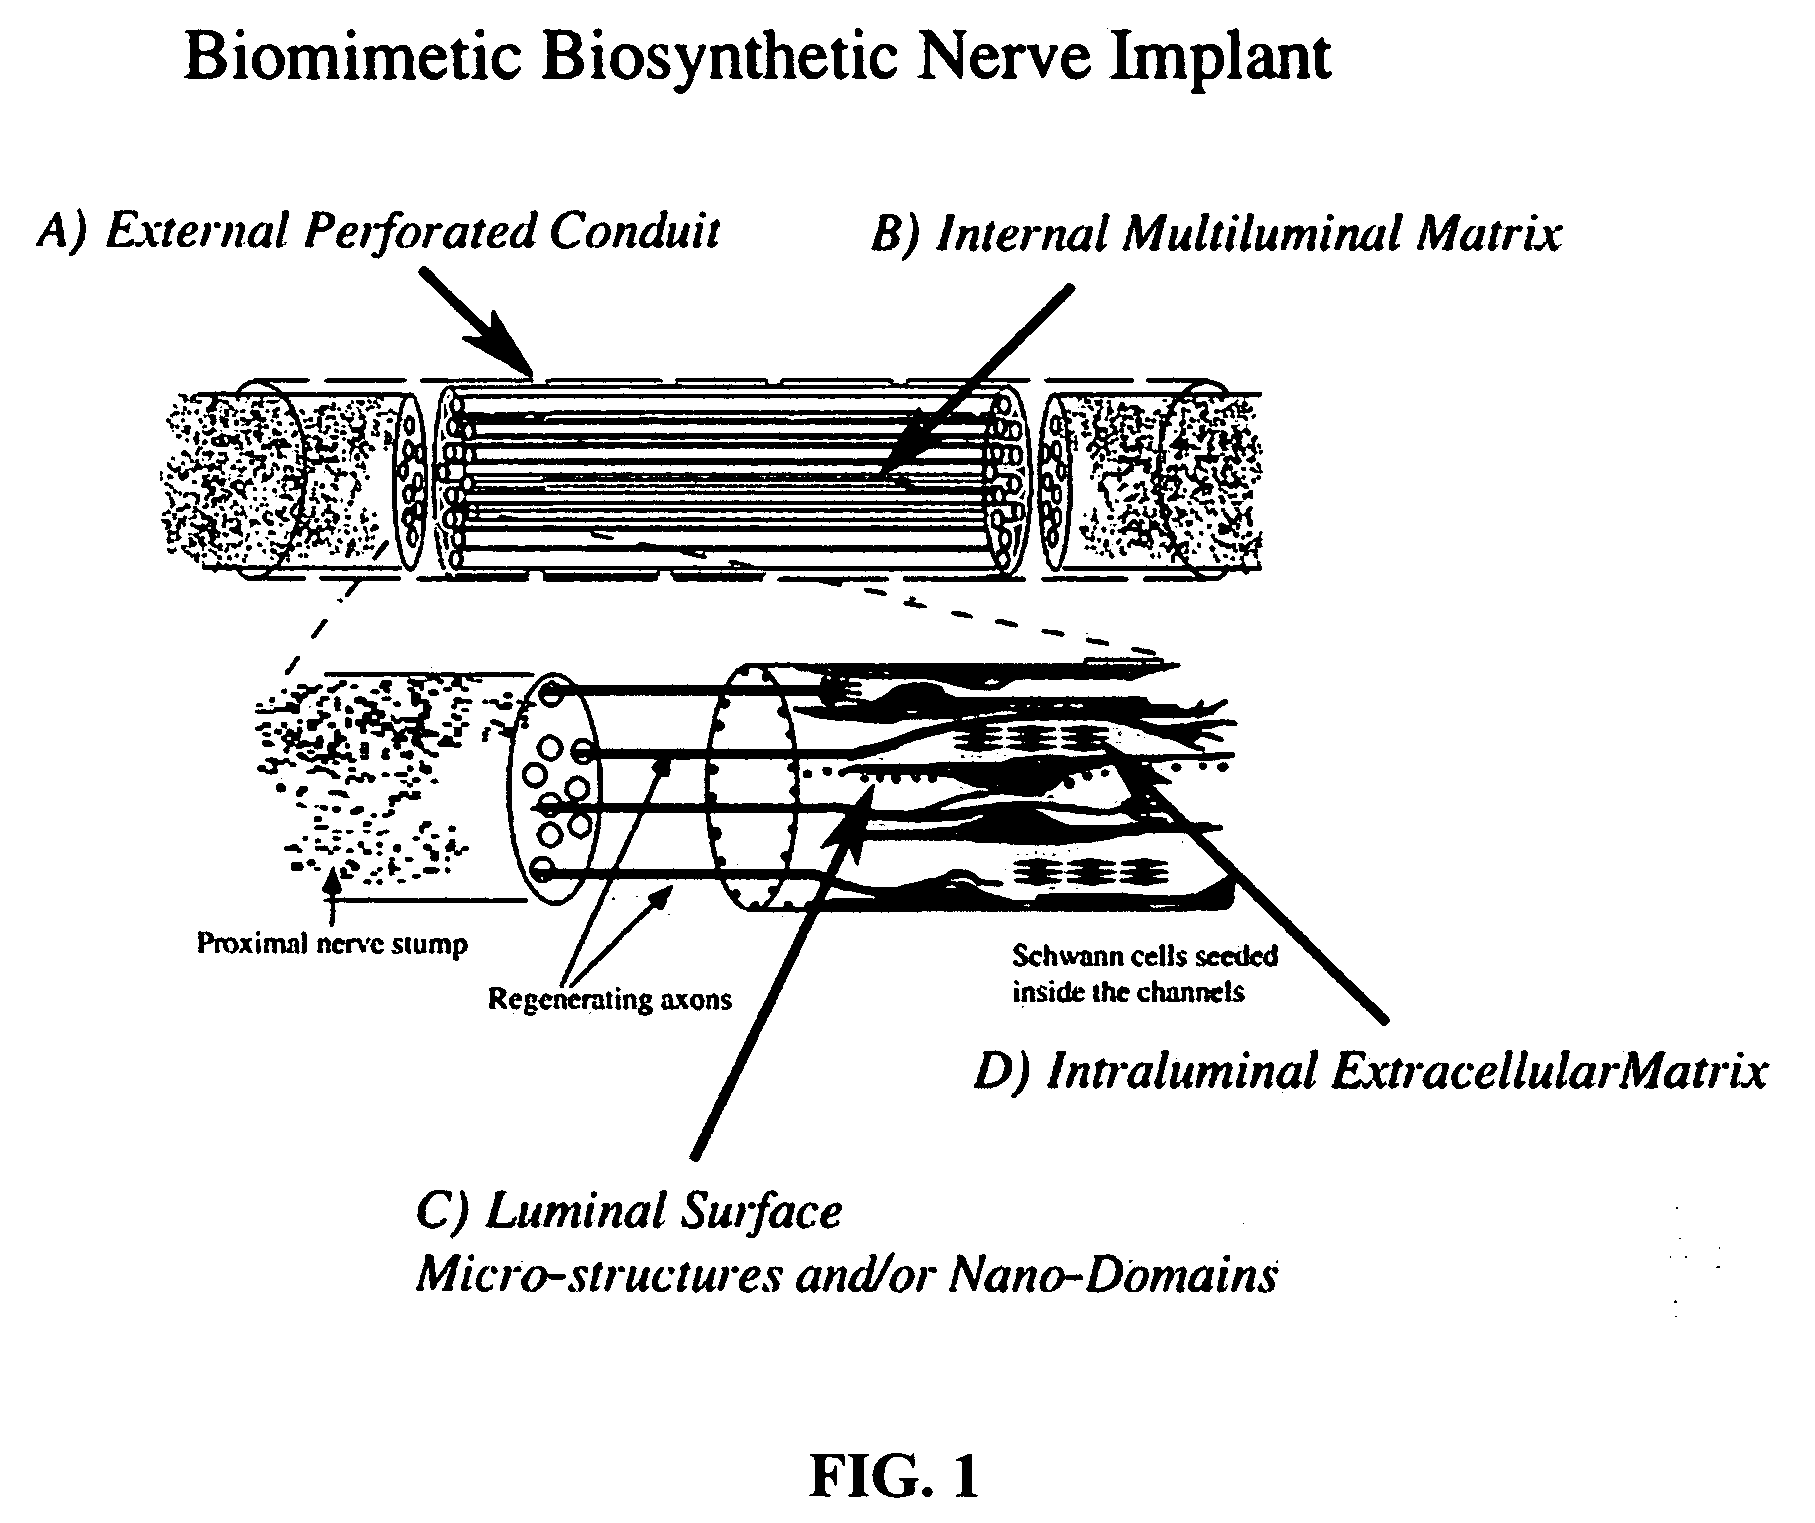 Biomimetic biosynthetic nerve implant